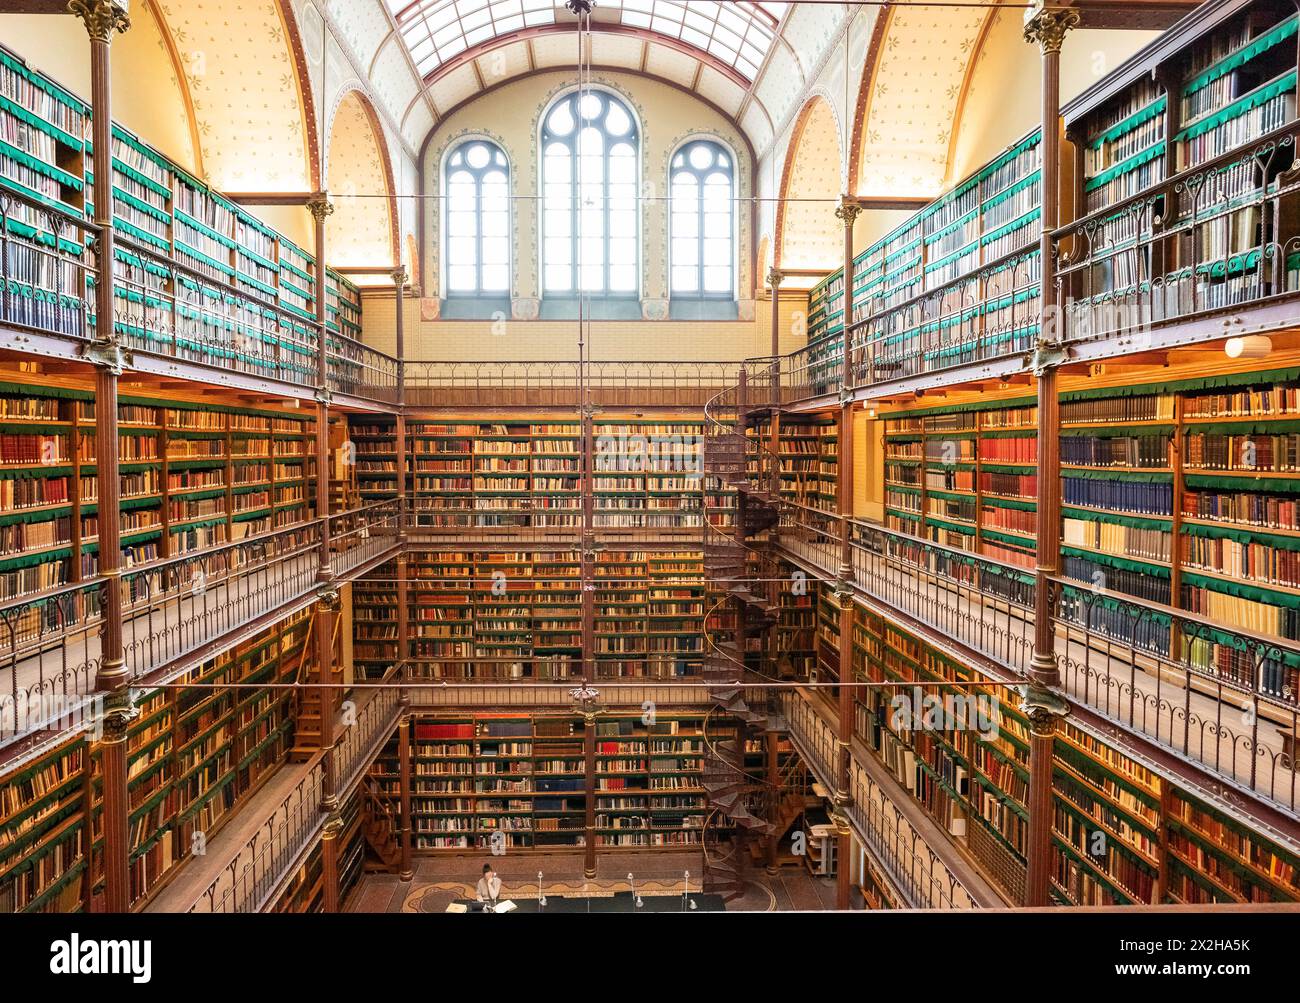 Bibliothèque Cuypers, Rijksmuseum, bâtiment du XIXe siècle, Amsterdam, pays-Bas Banque D'Images